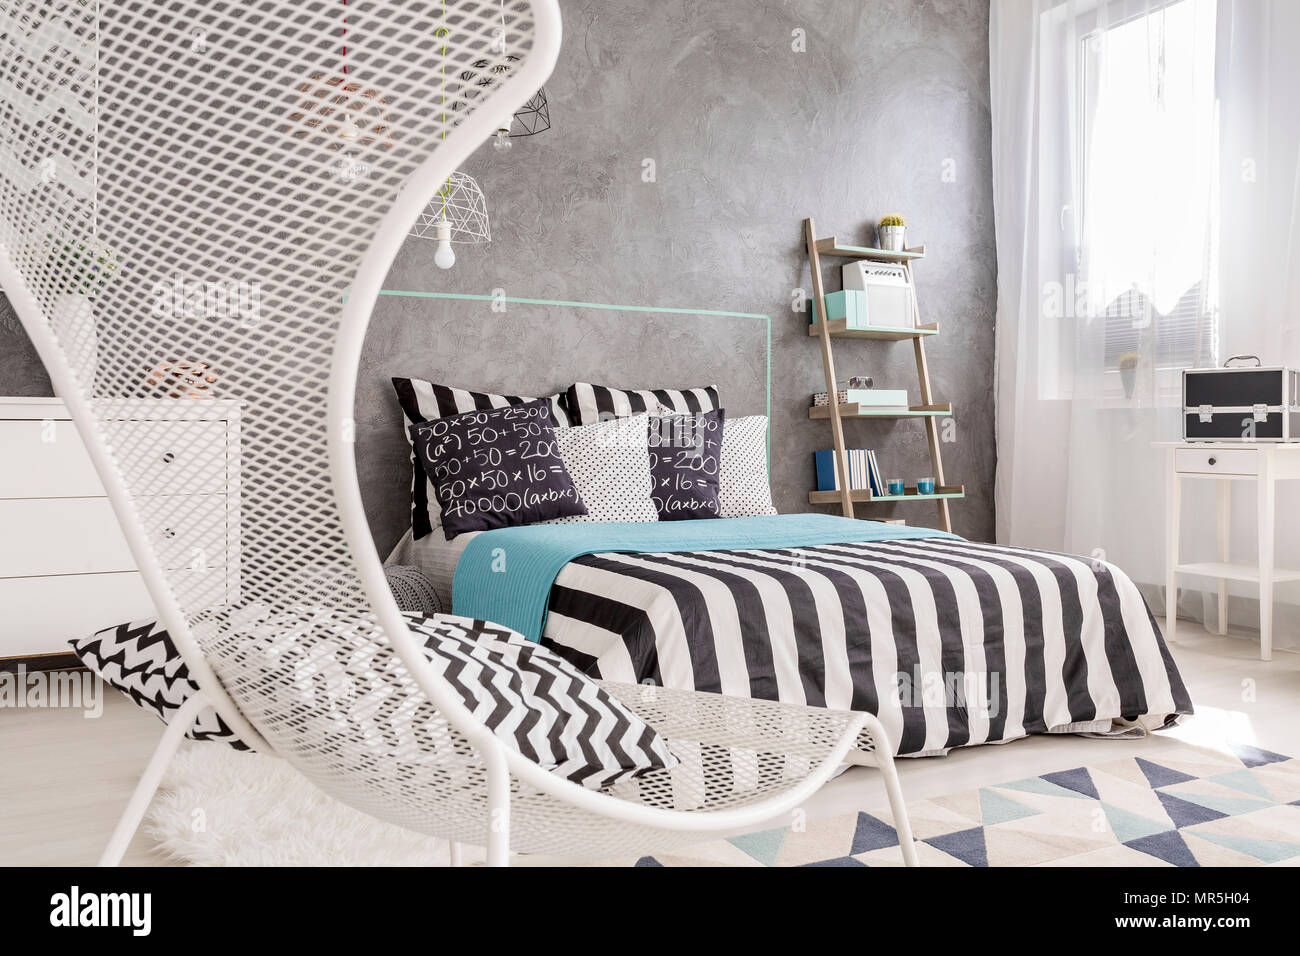 Modernes Schlafzimmer mit weißer Stuhl, großes Bett und dekorative Wand  fertig stellen Stockfotografie - Alamy